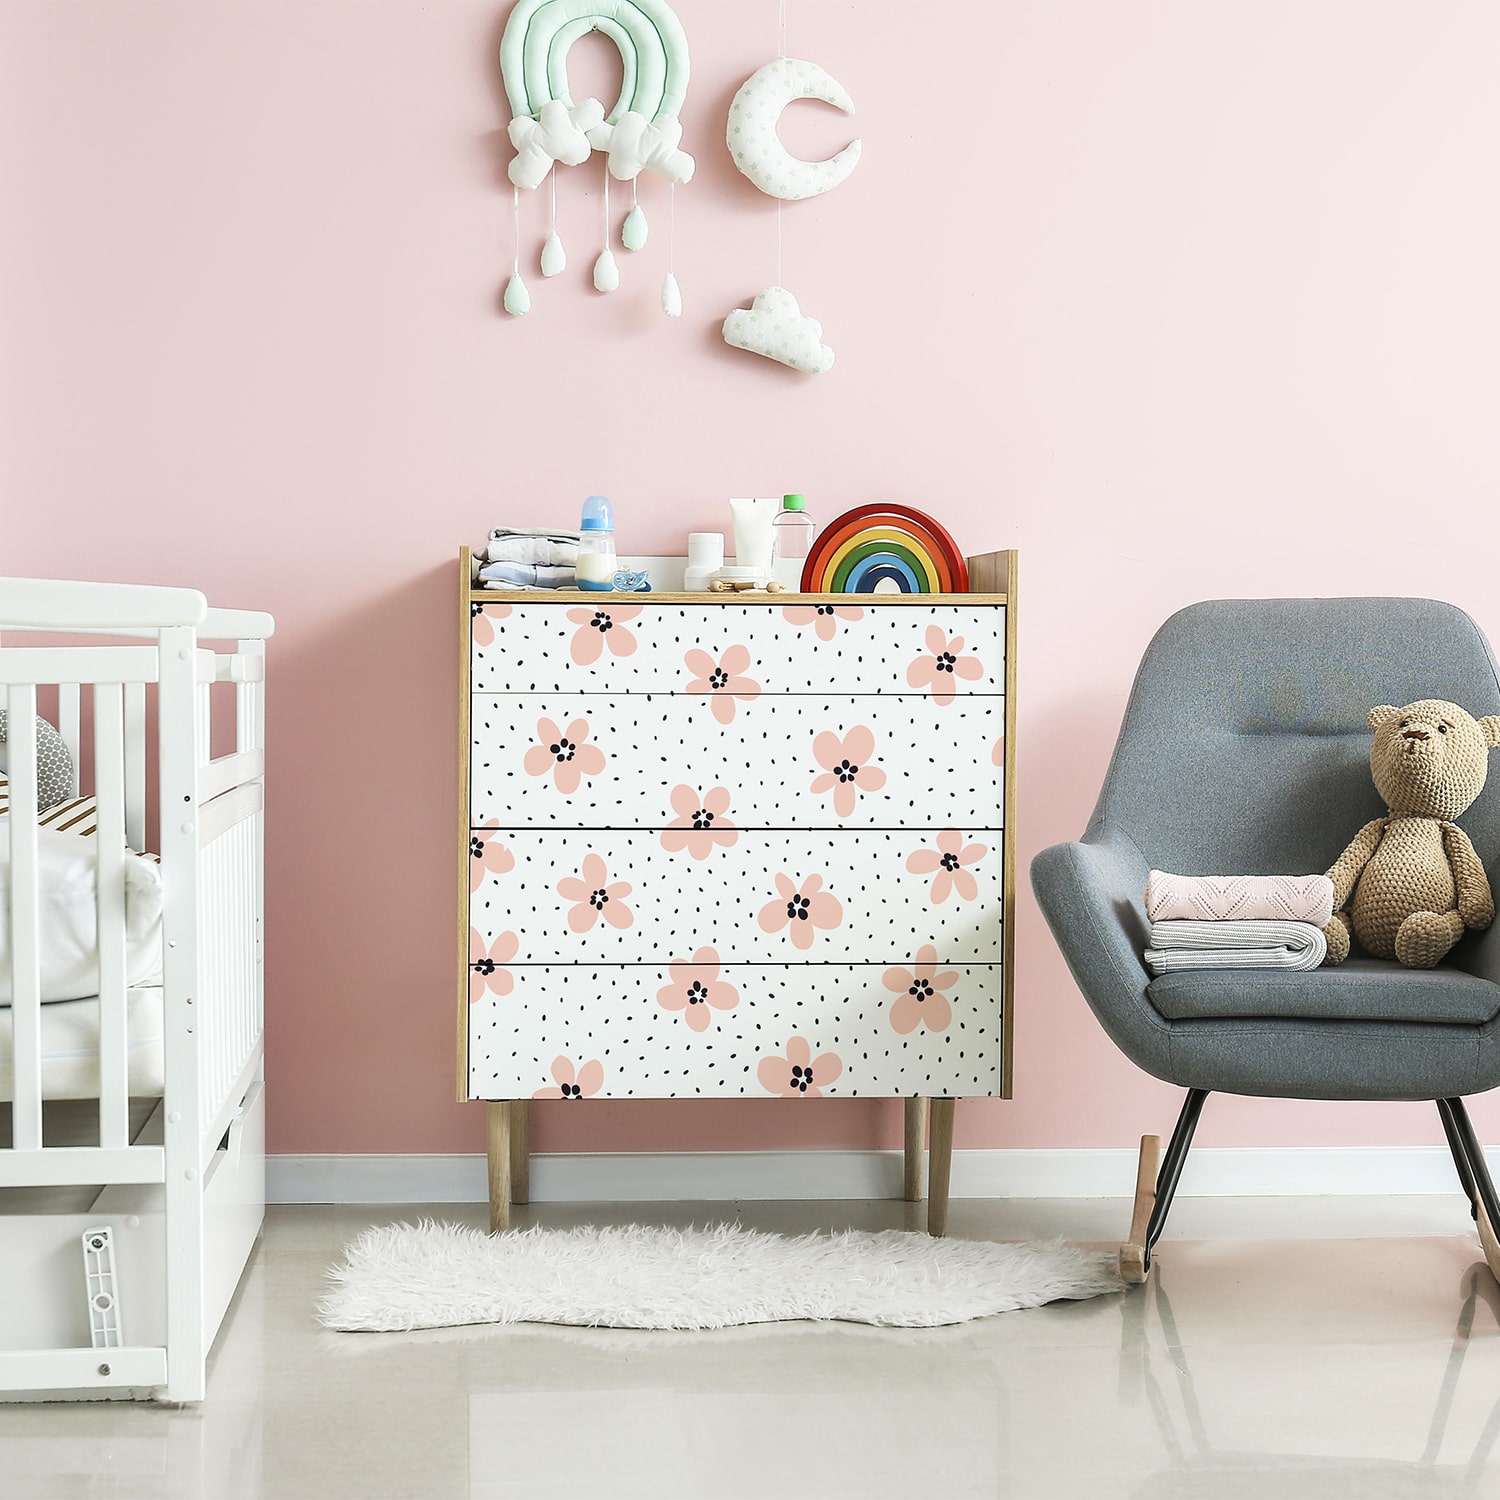 PP79-meuble-papier-peint-adhesif-decoratif-revetement-vinyle-motifs-fleurs-renovation-meuble-mur-min